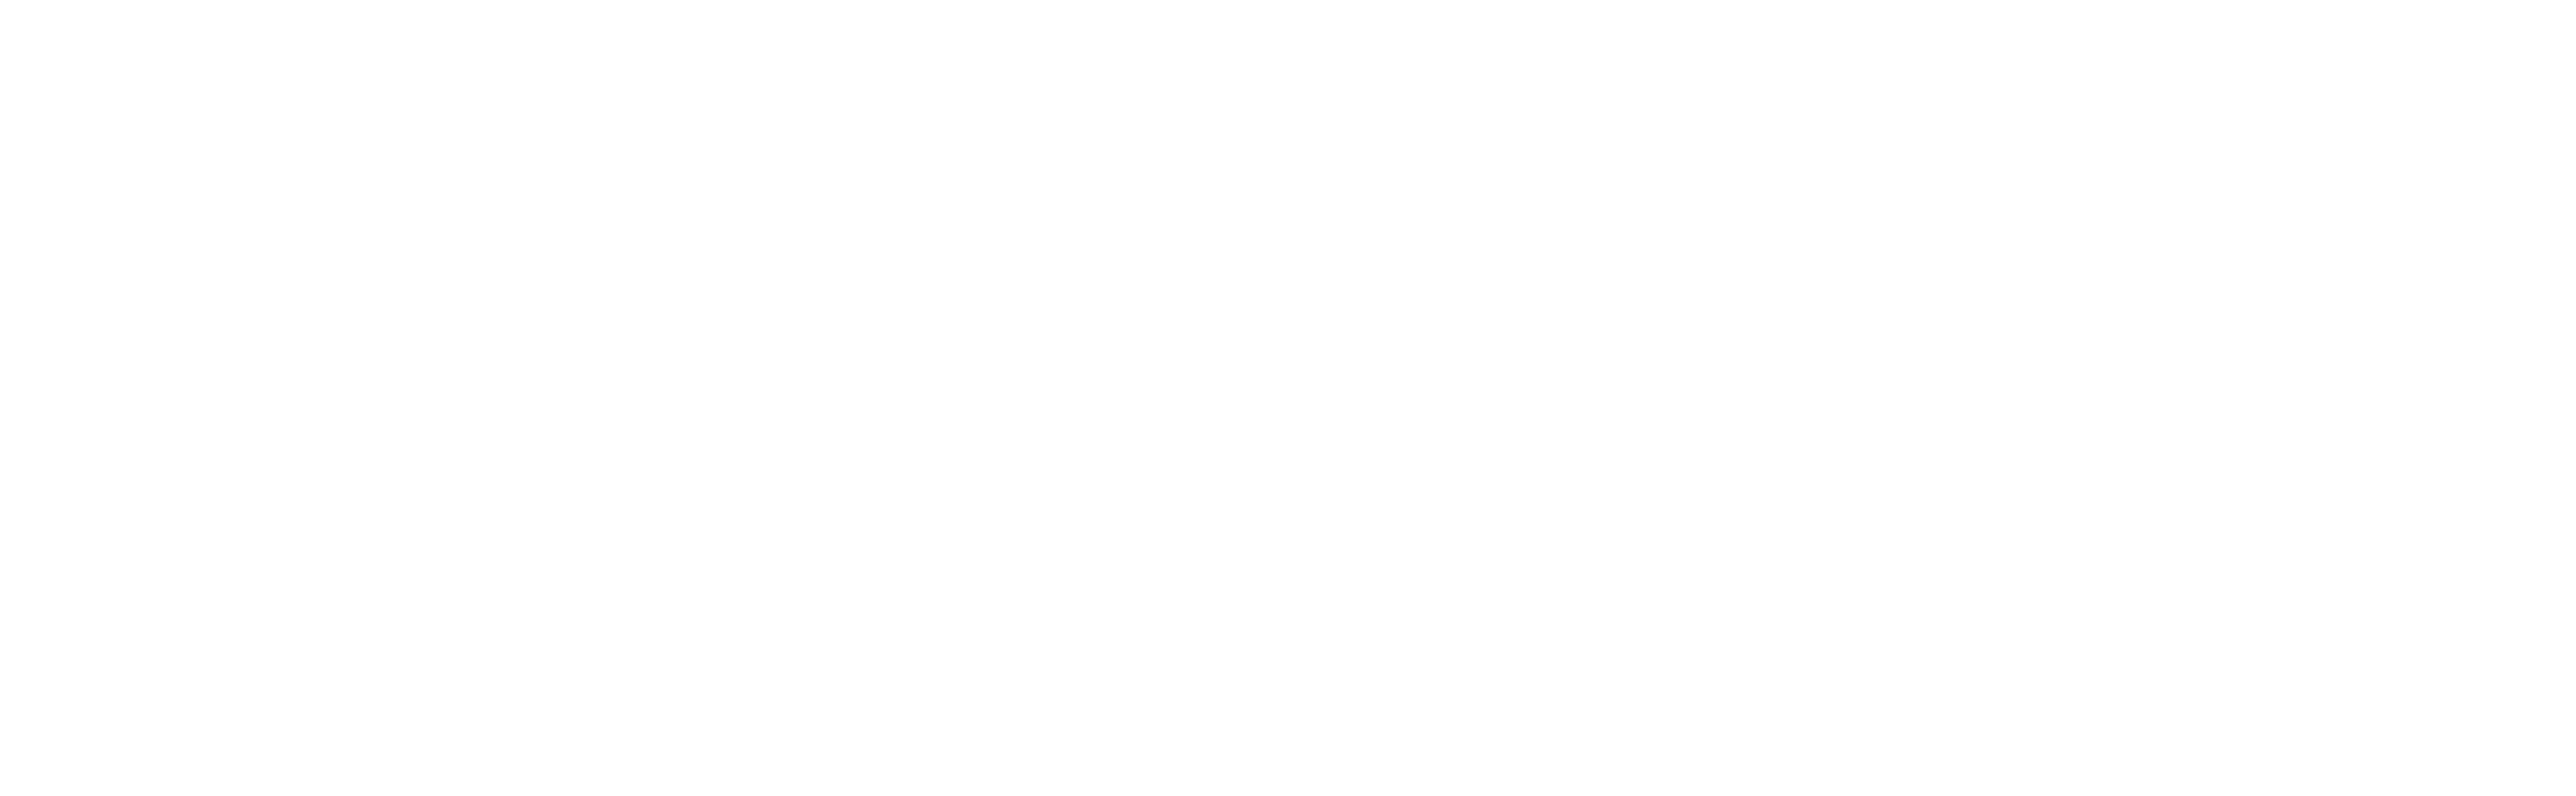 e23 stylised logo